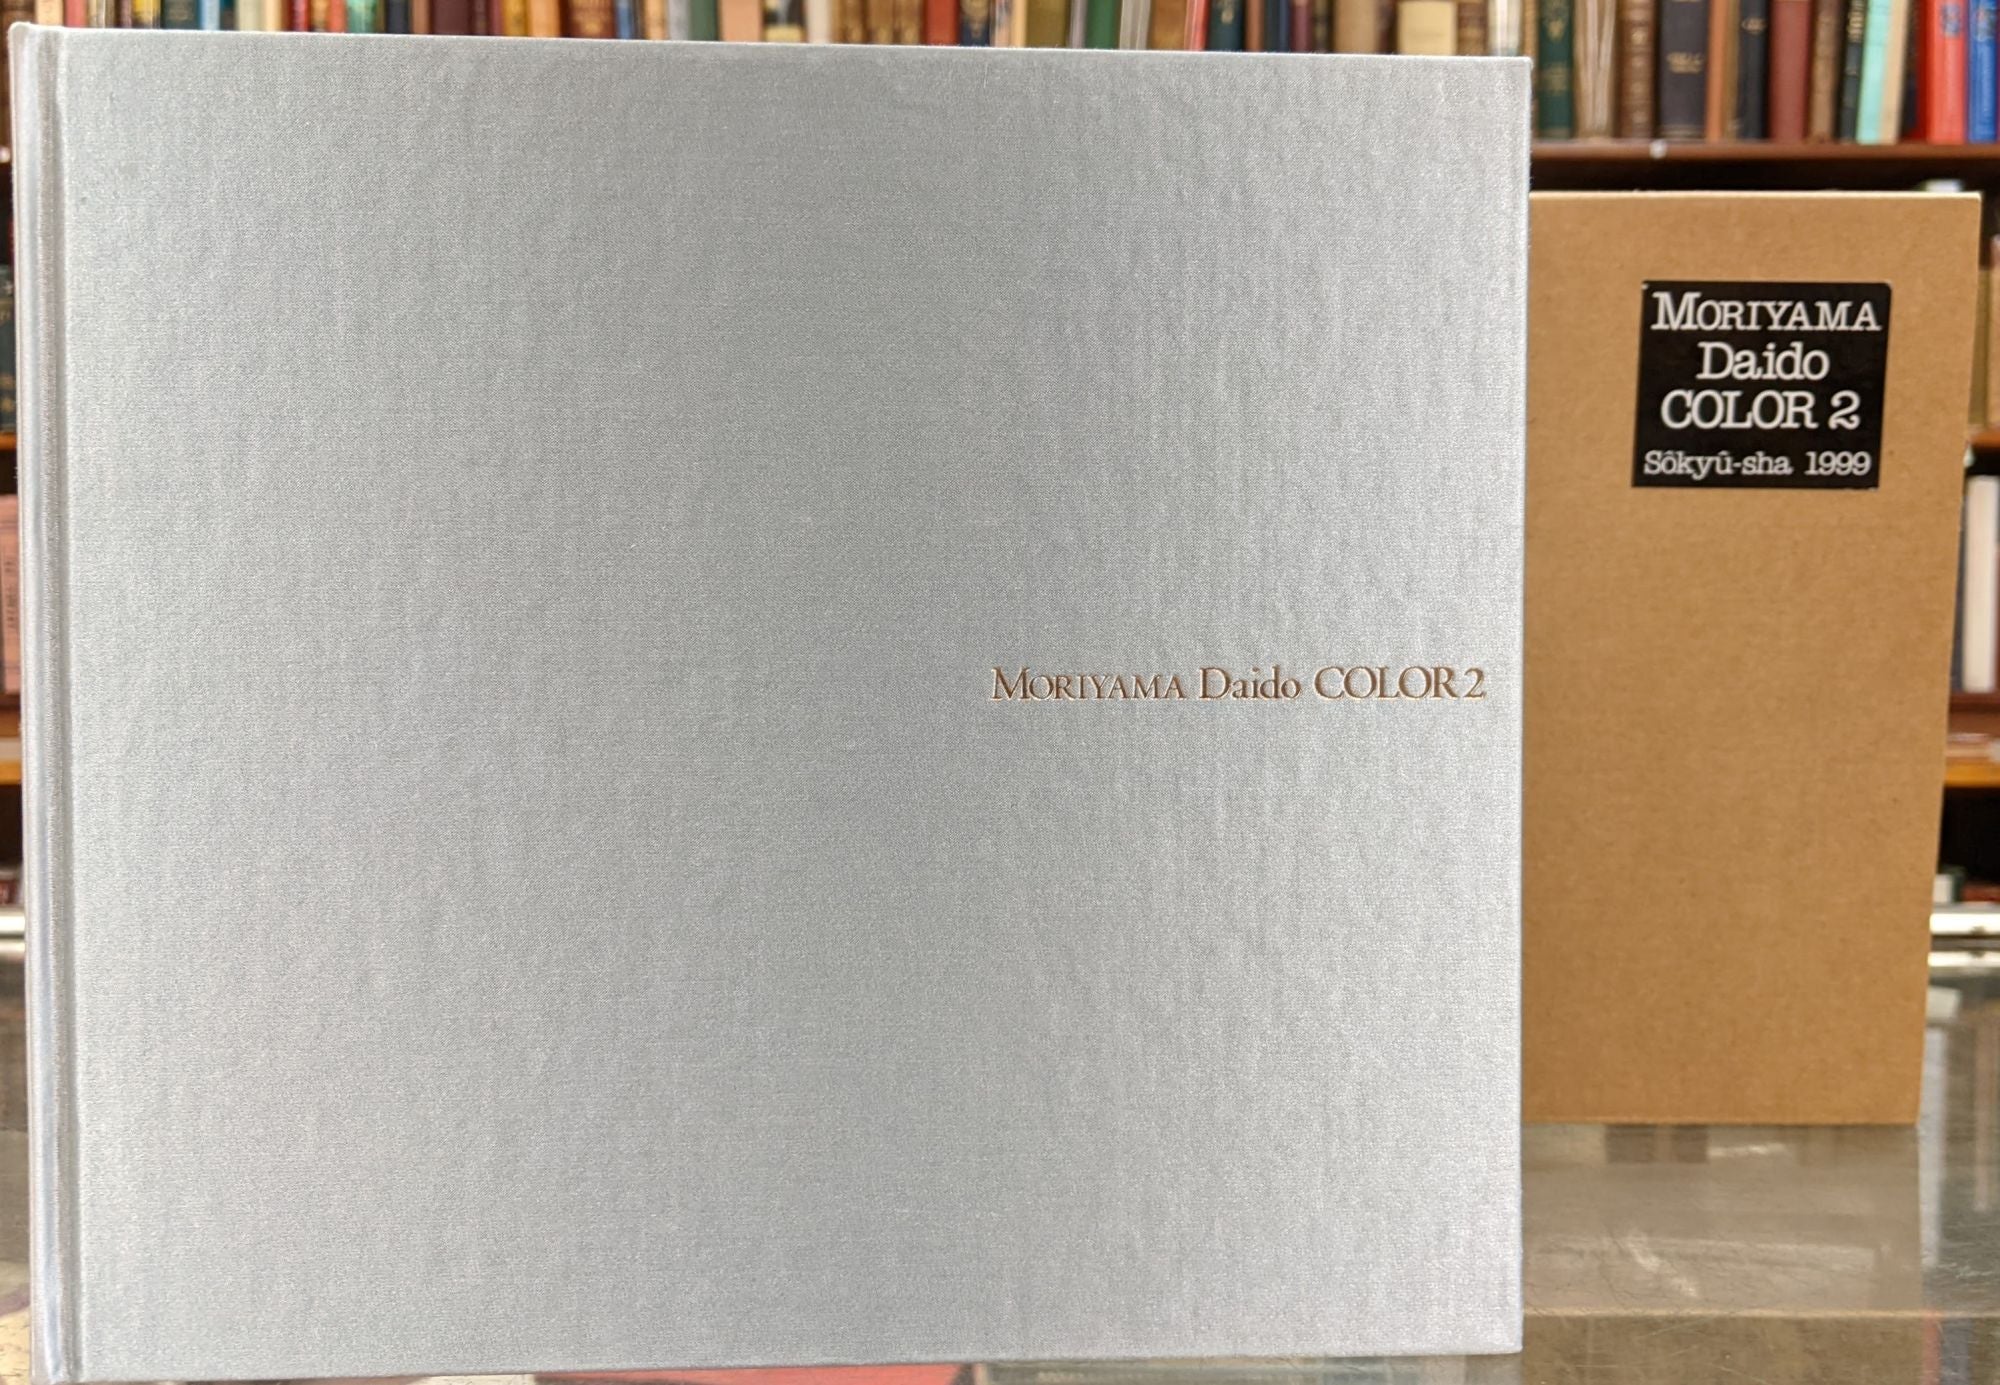 Moriyama Daido: Color 2 by Daido Moriyama on Moe's Books